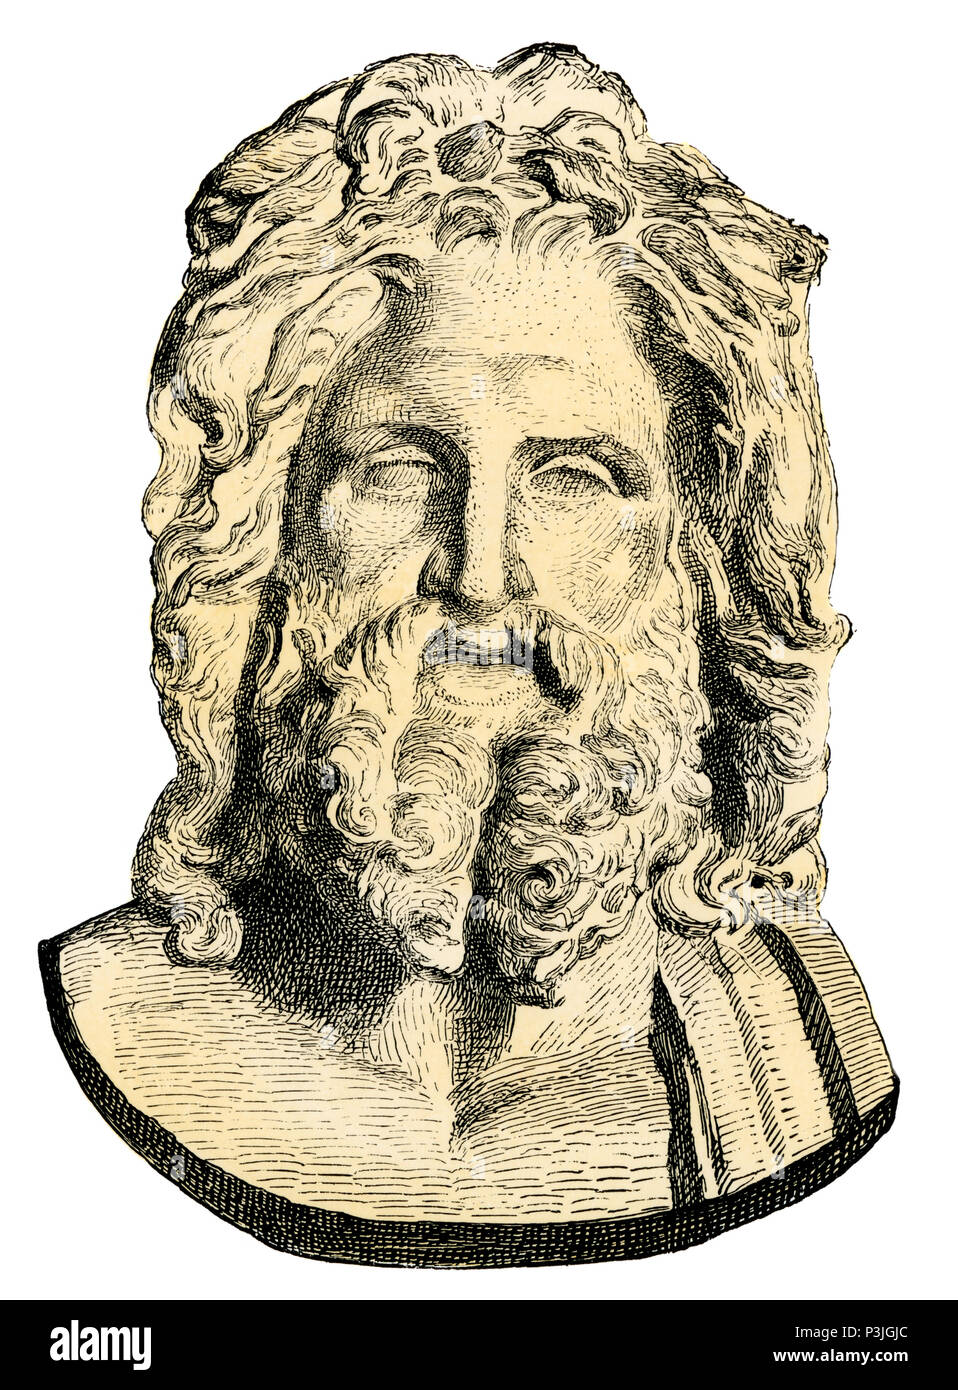 Zeus, roi des dieux grecs. À la main, gravure sur bois, reproduction d'un buste au Vatican Banque D'Images